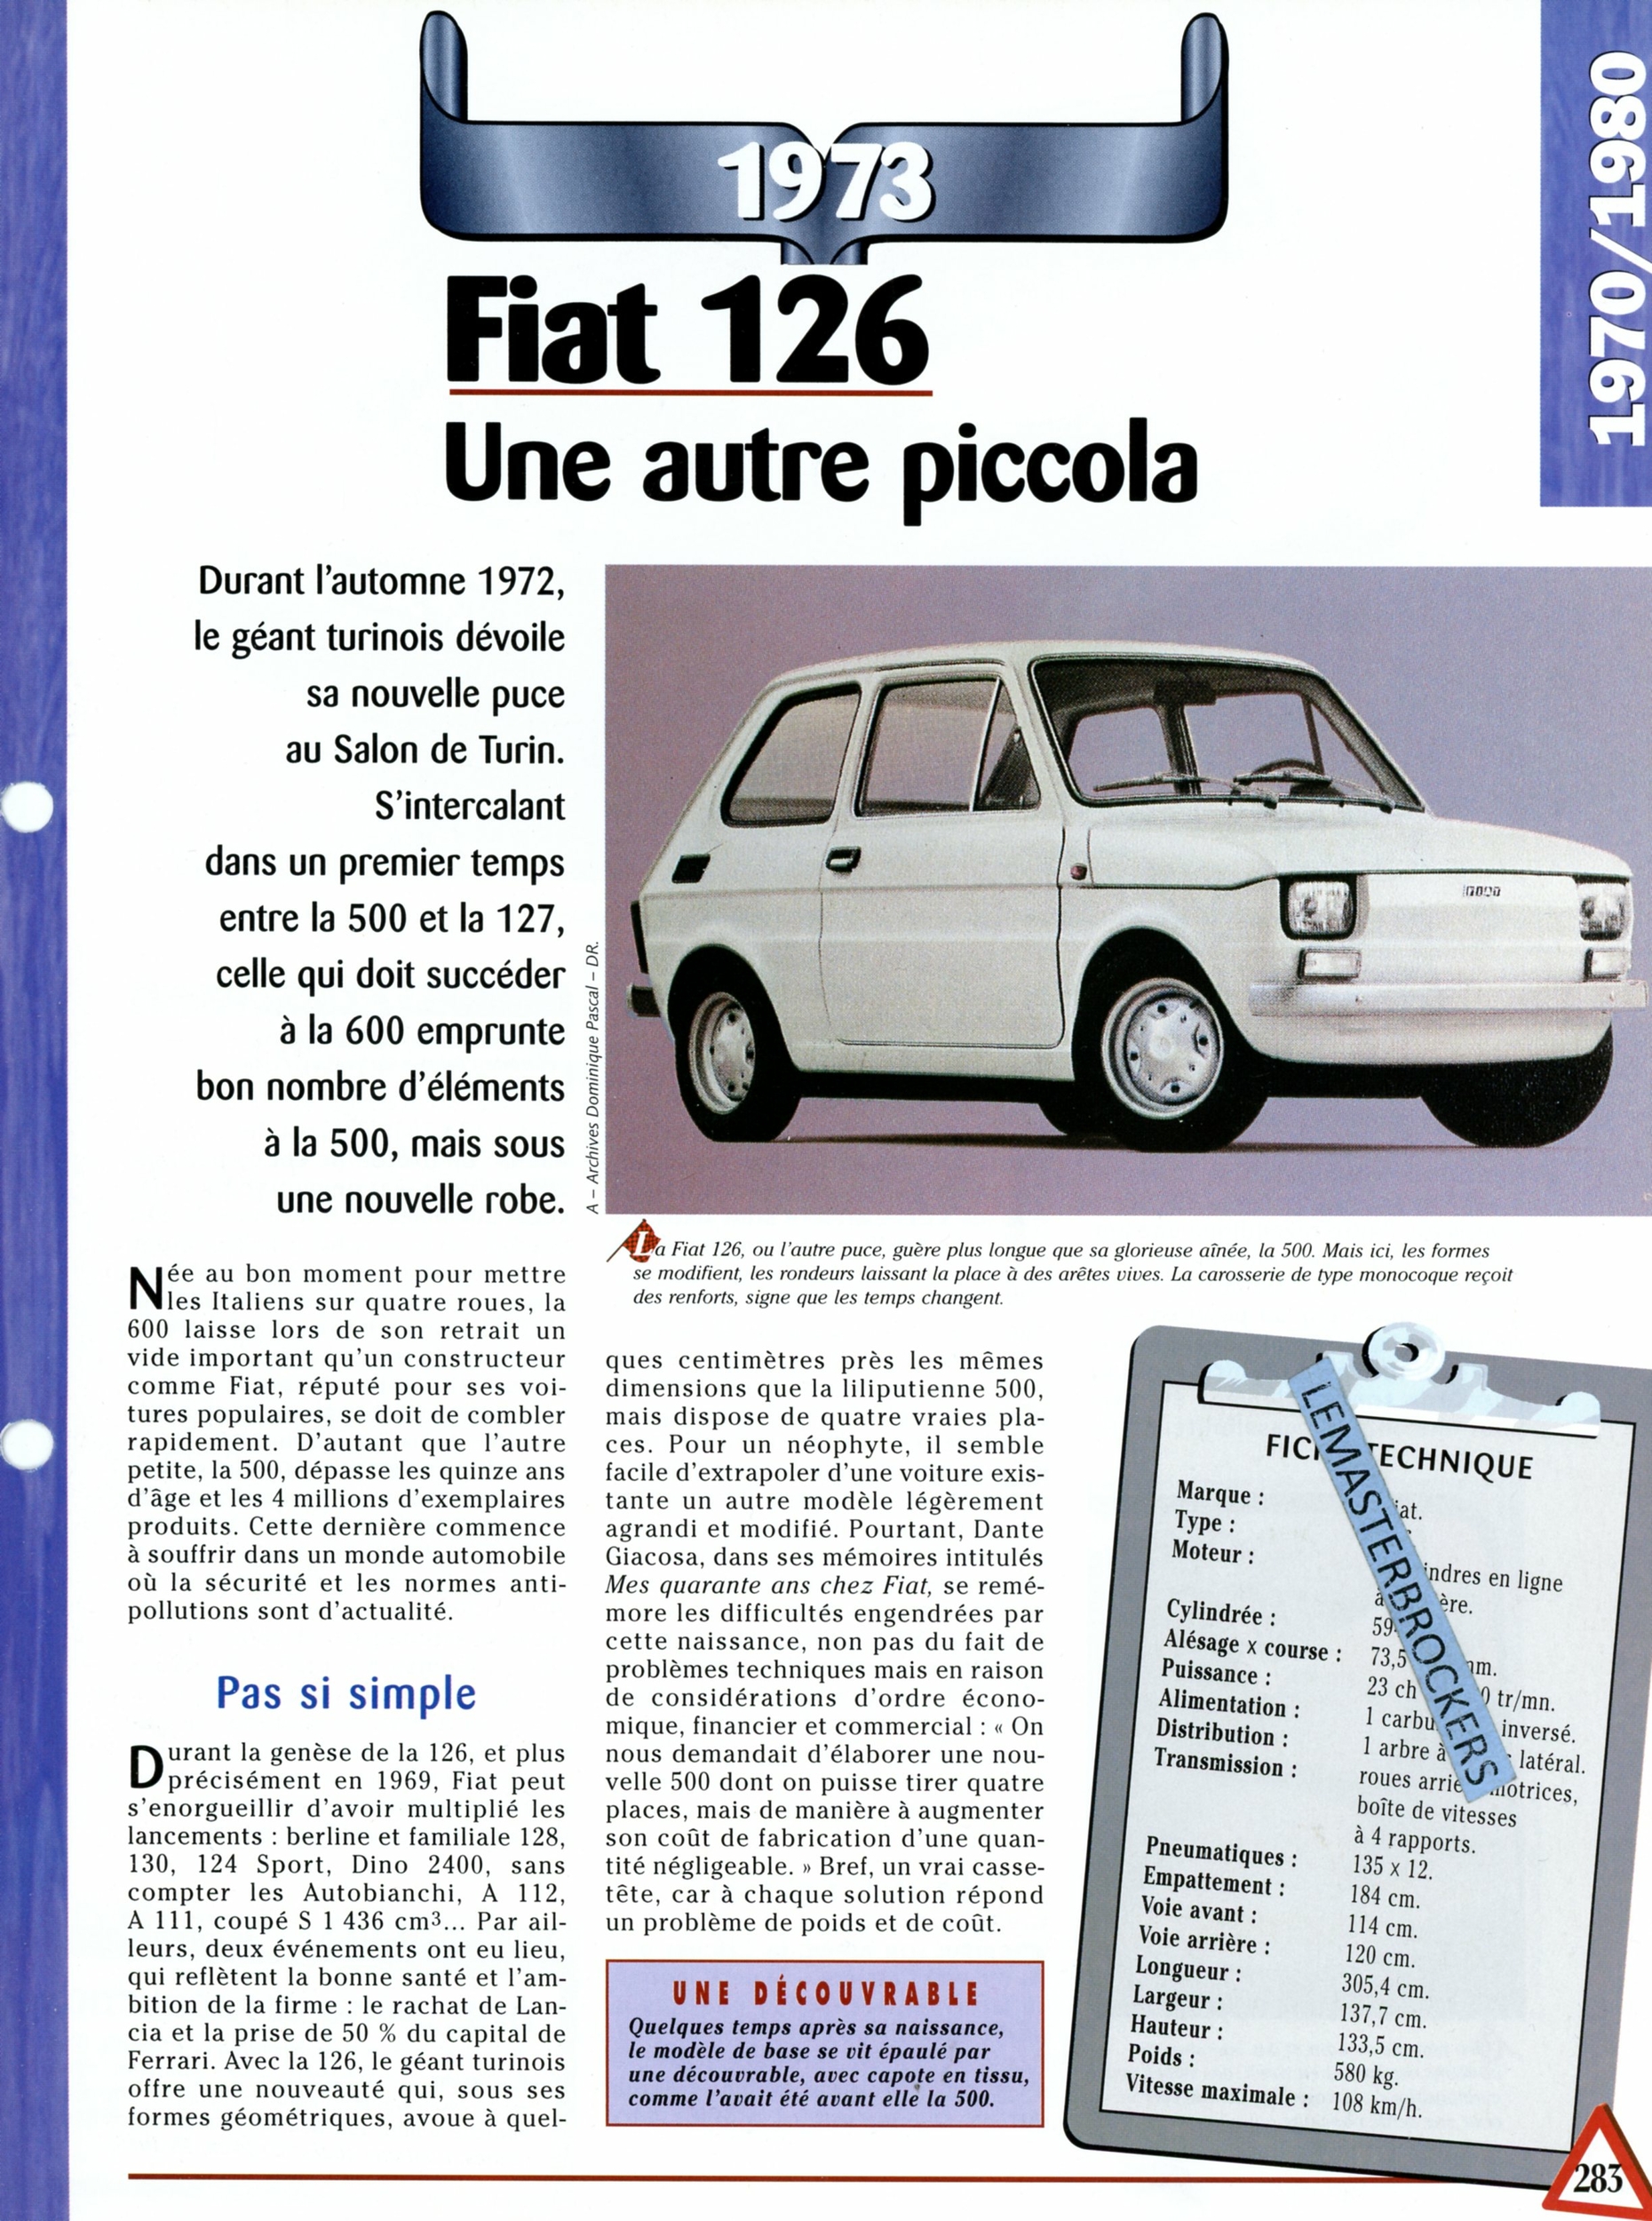 FICHE-FIAT-126-1973-FICHE-AUTO-FICHE-TECHNIQUE-VOITURE-LEMASTERBROCKERS